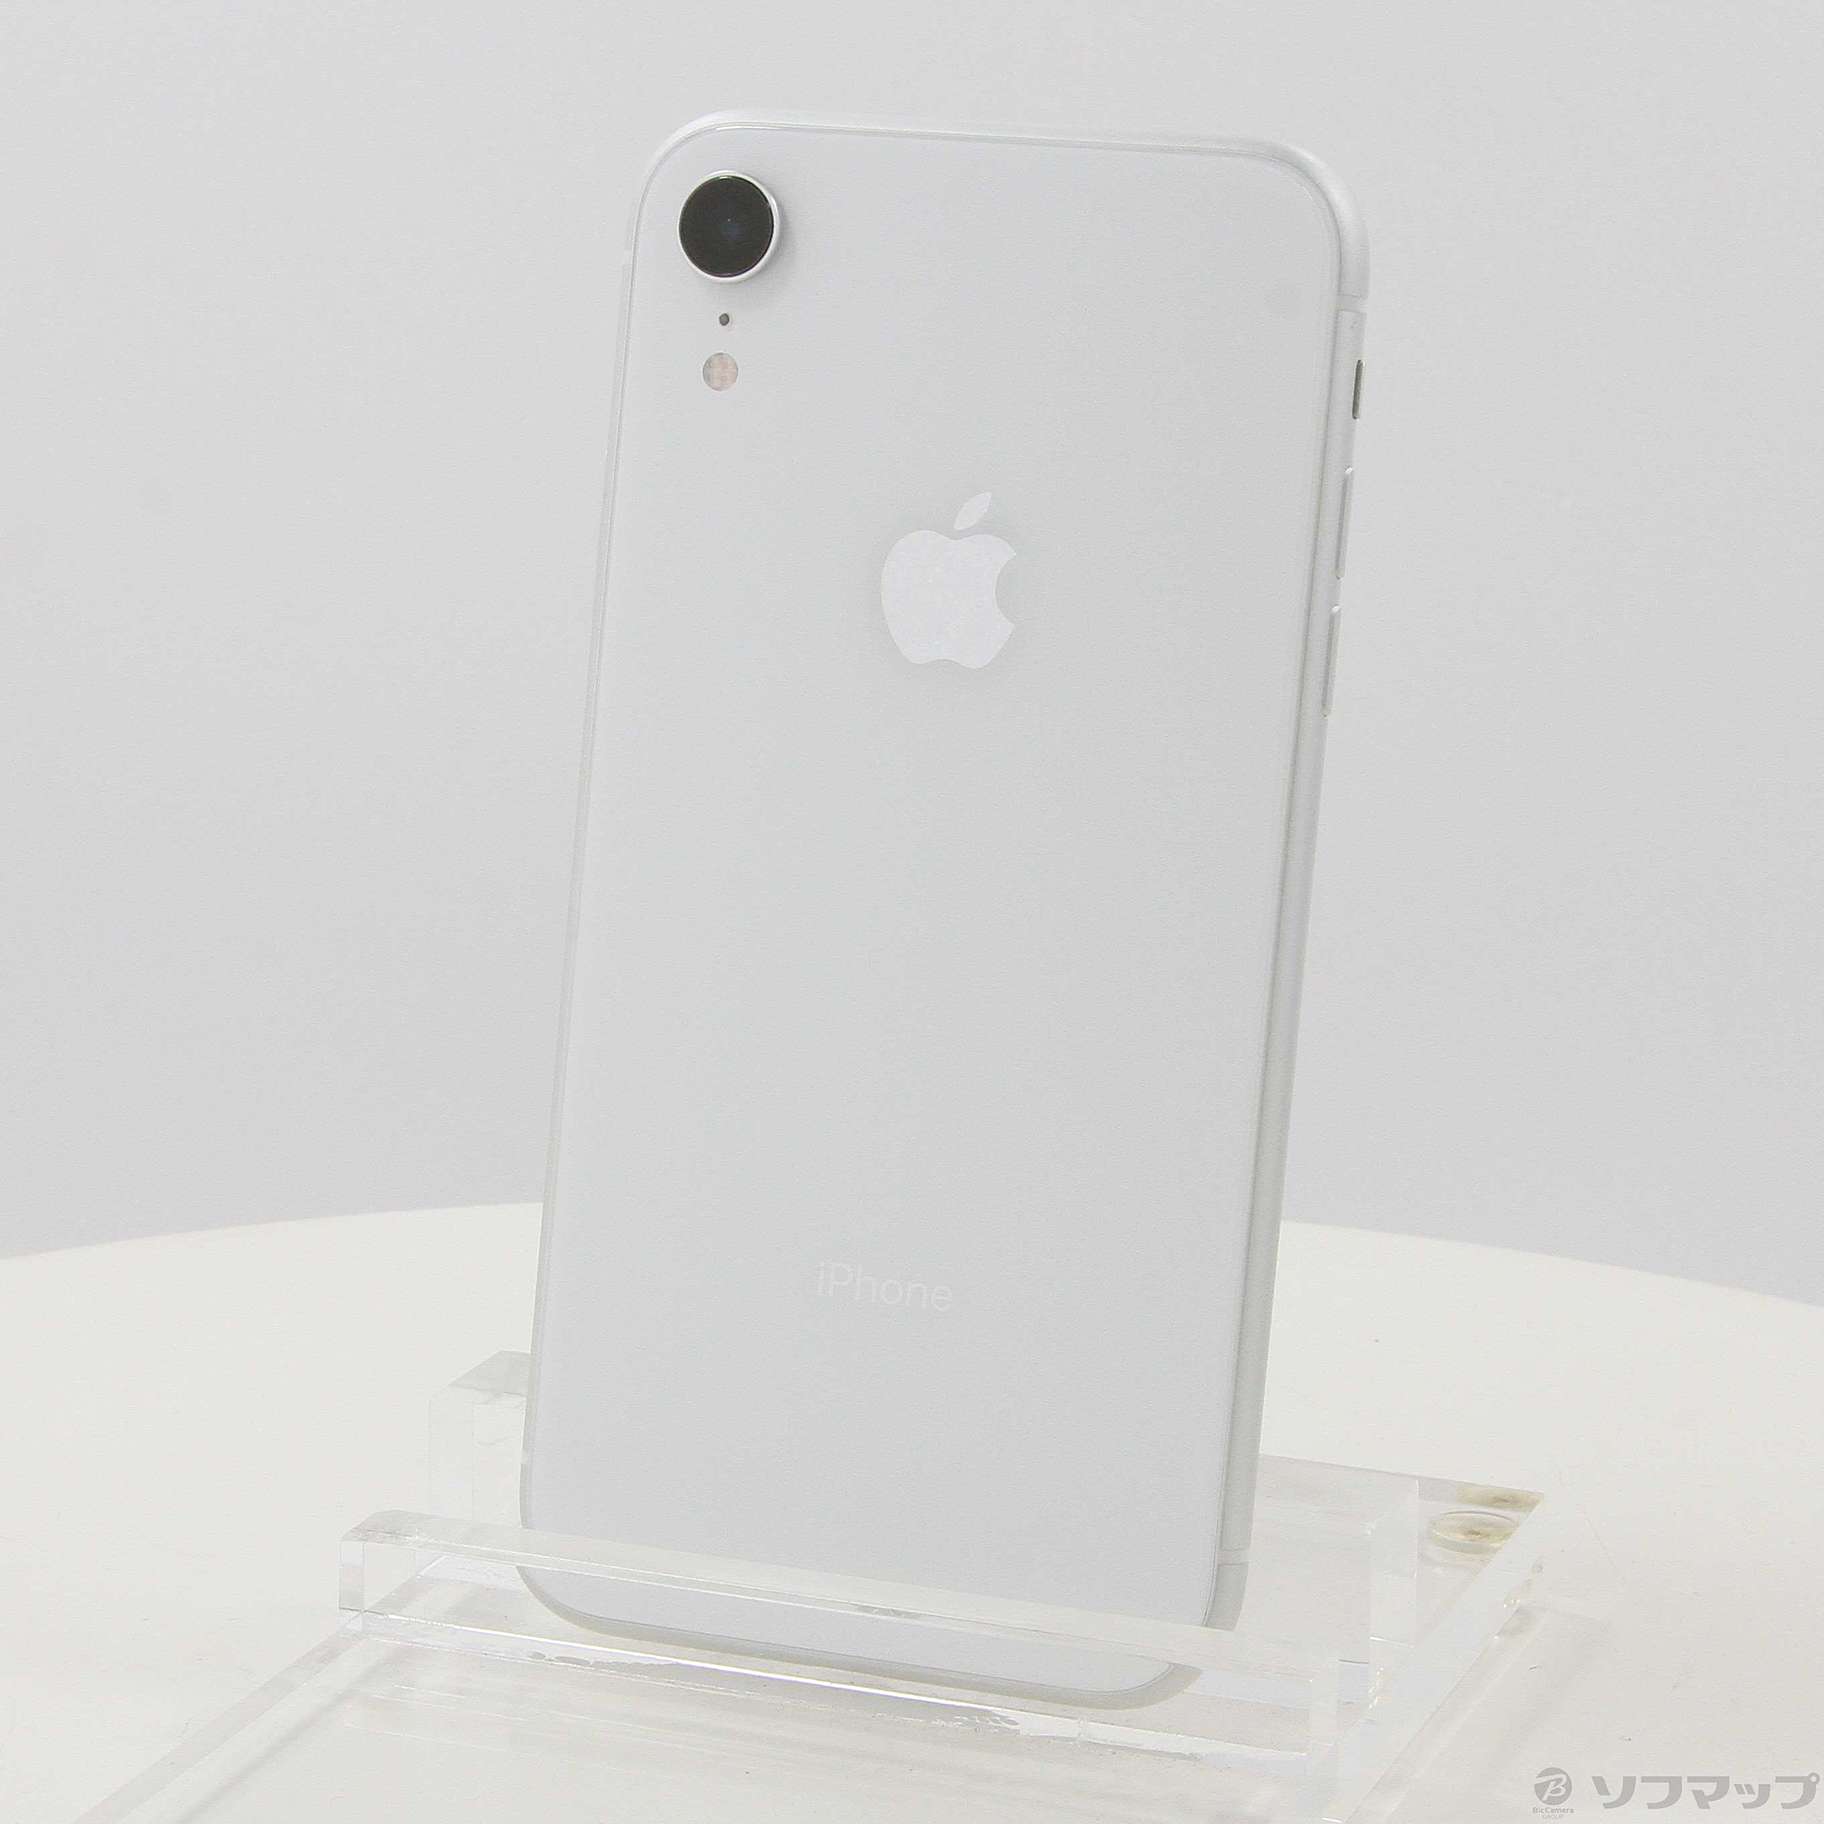 8,820円iPhoneXR 64GB ホワイト